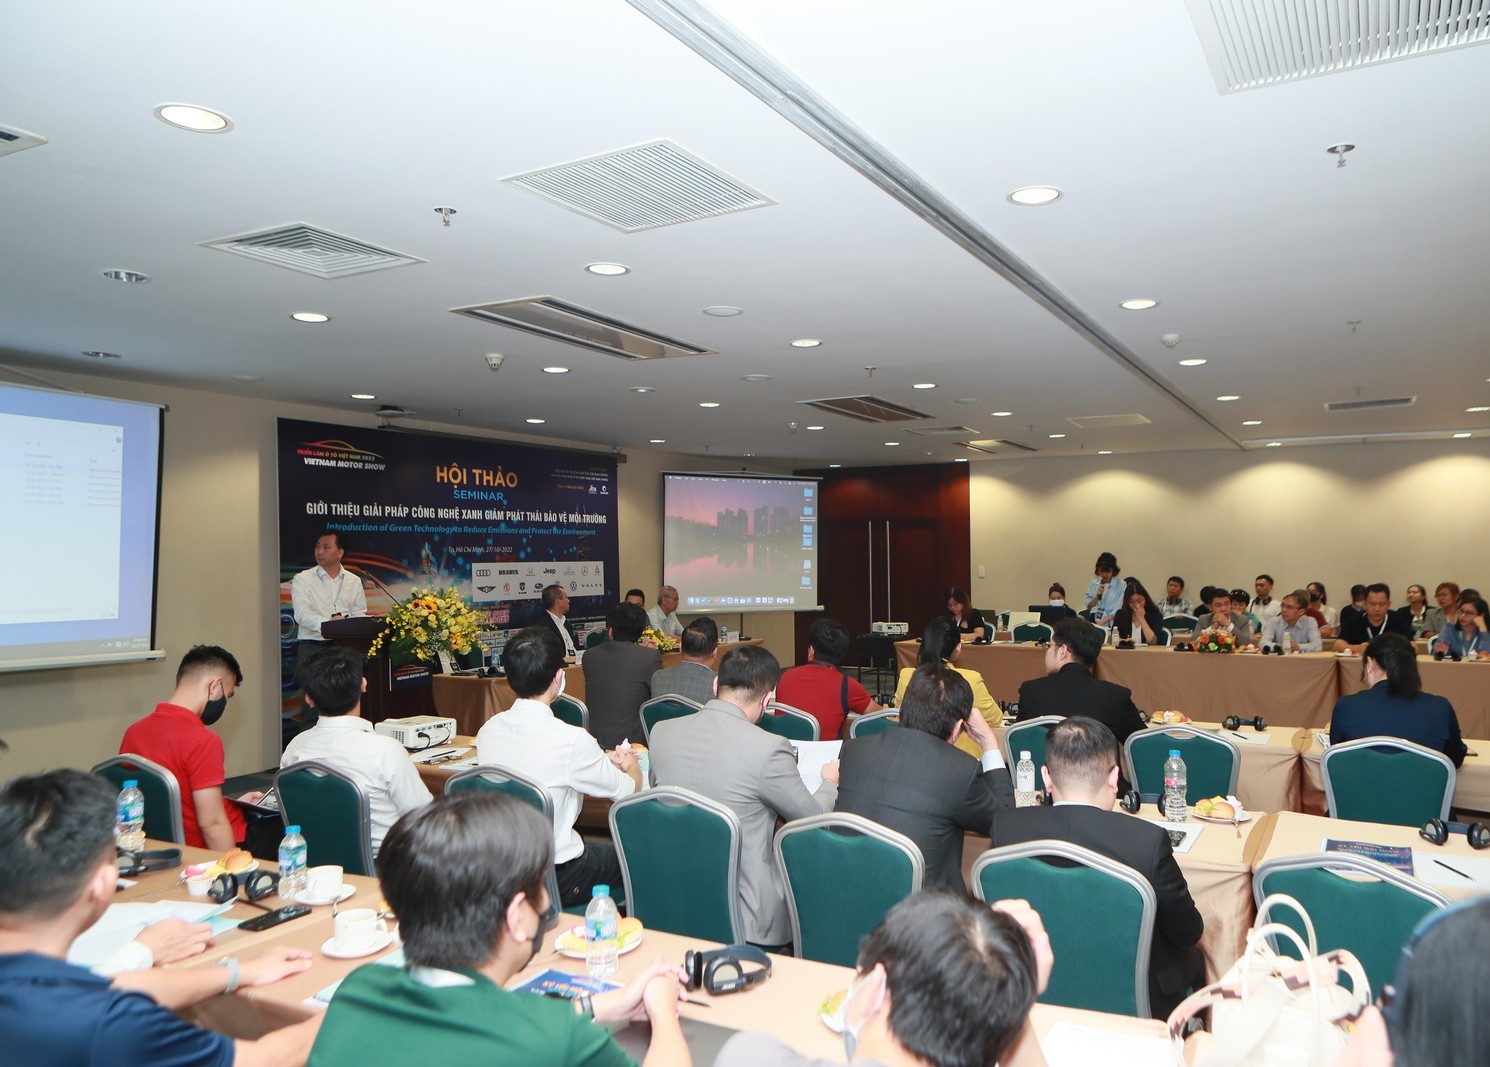 Vietnam Motor Show 2022 hướng đến mục tiêu giảm phát thải vì môi trường & sự phát triển bền vững